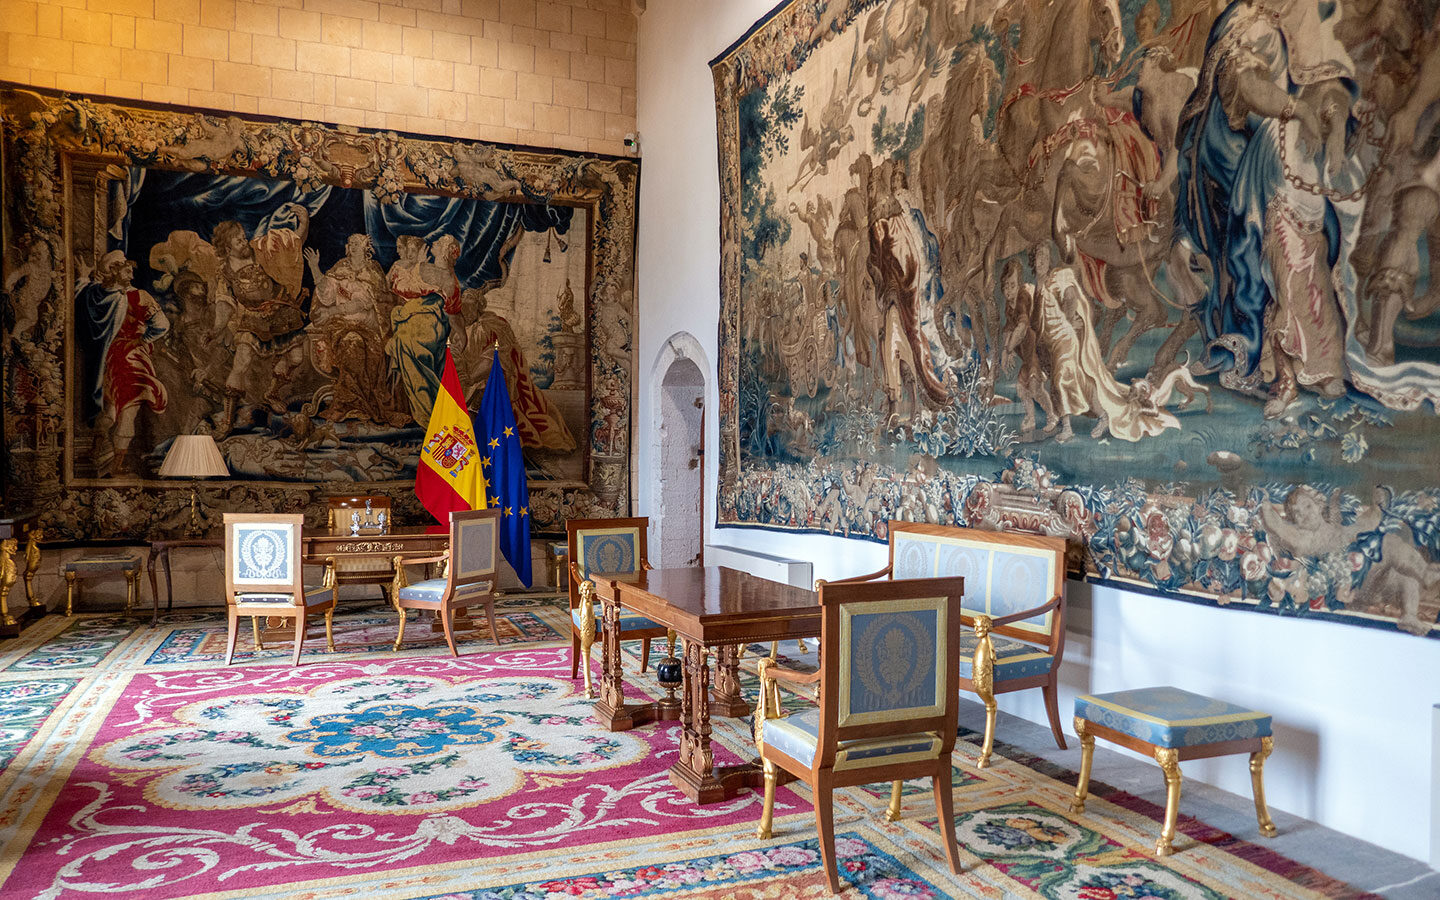 The royal apartments at the Palace of La Almudaina in Palma